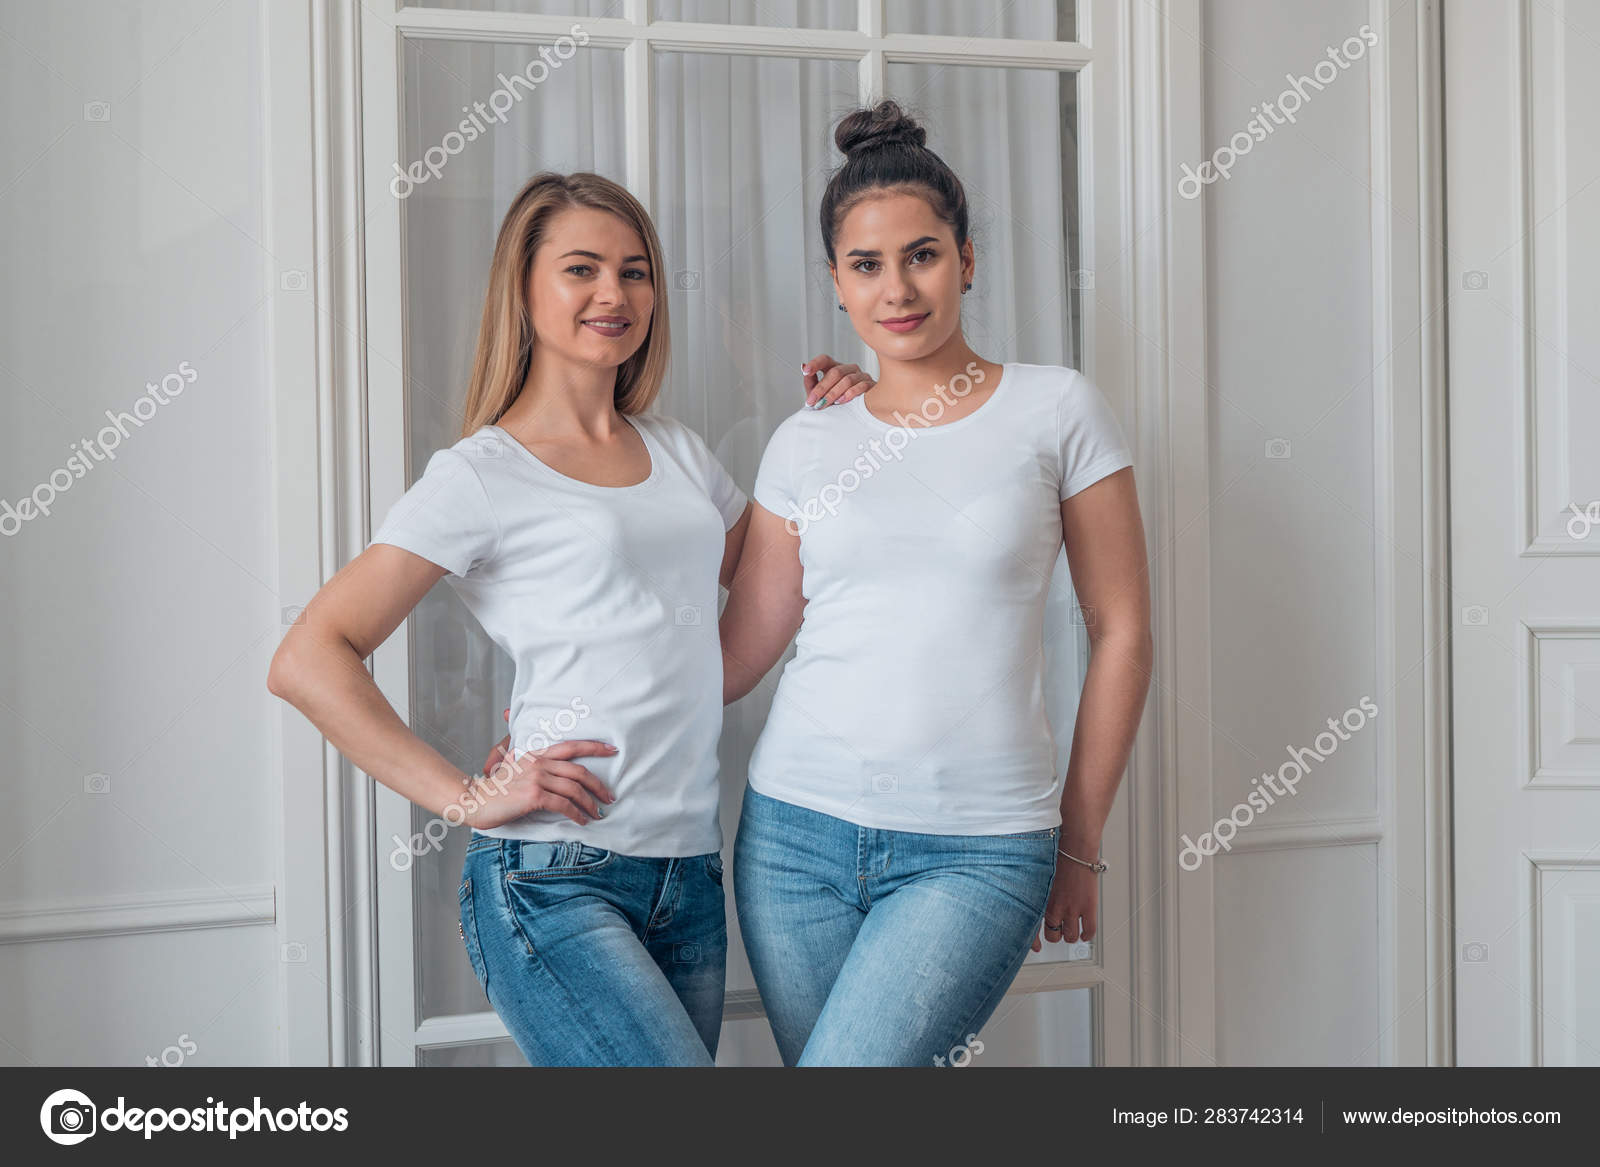 Udvidelse Omgivelser sfære Portræt af sød blondine og brunette i blå jeans og hvide t-shirts. Modellen  af logoet på en hvid t-shirt . — Stock-foto © 2735369.mail.ru #283742314